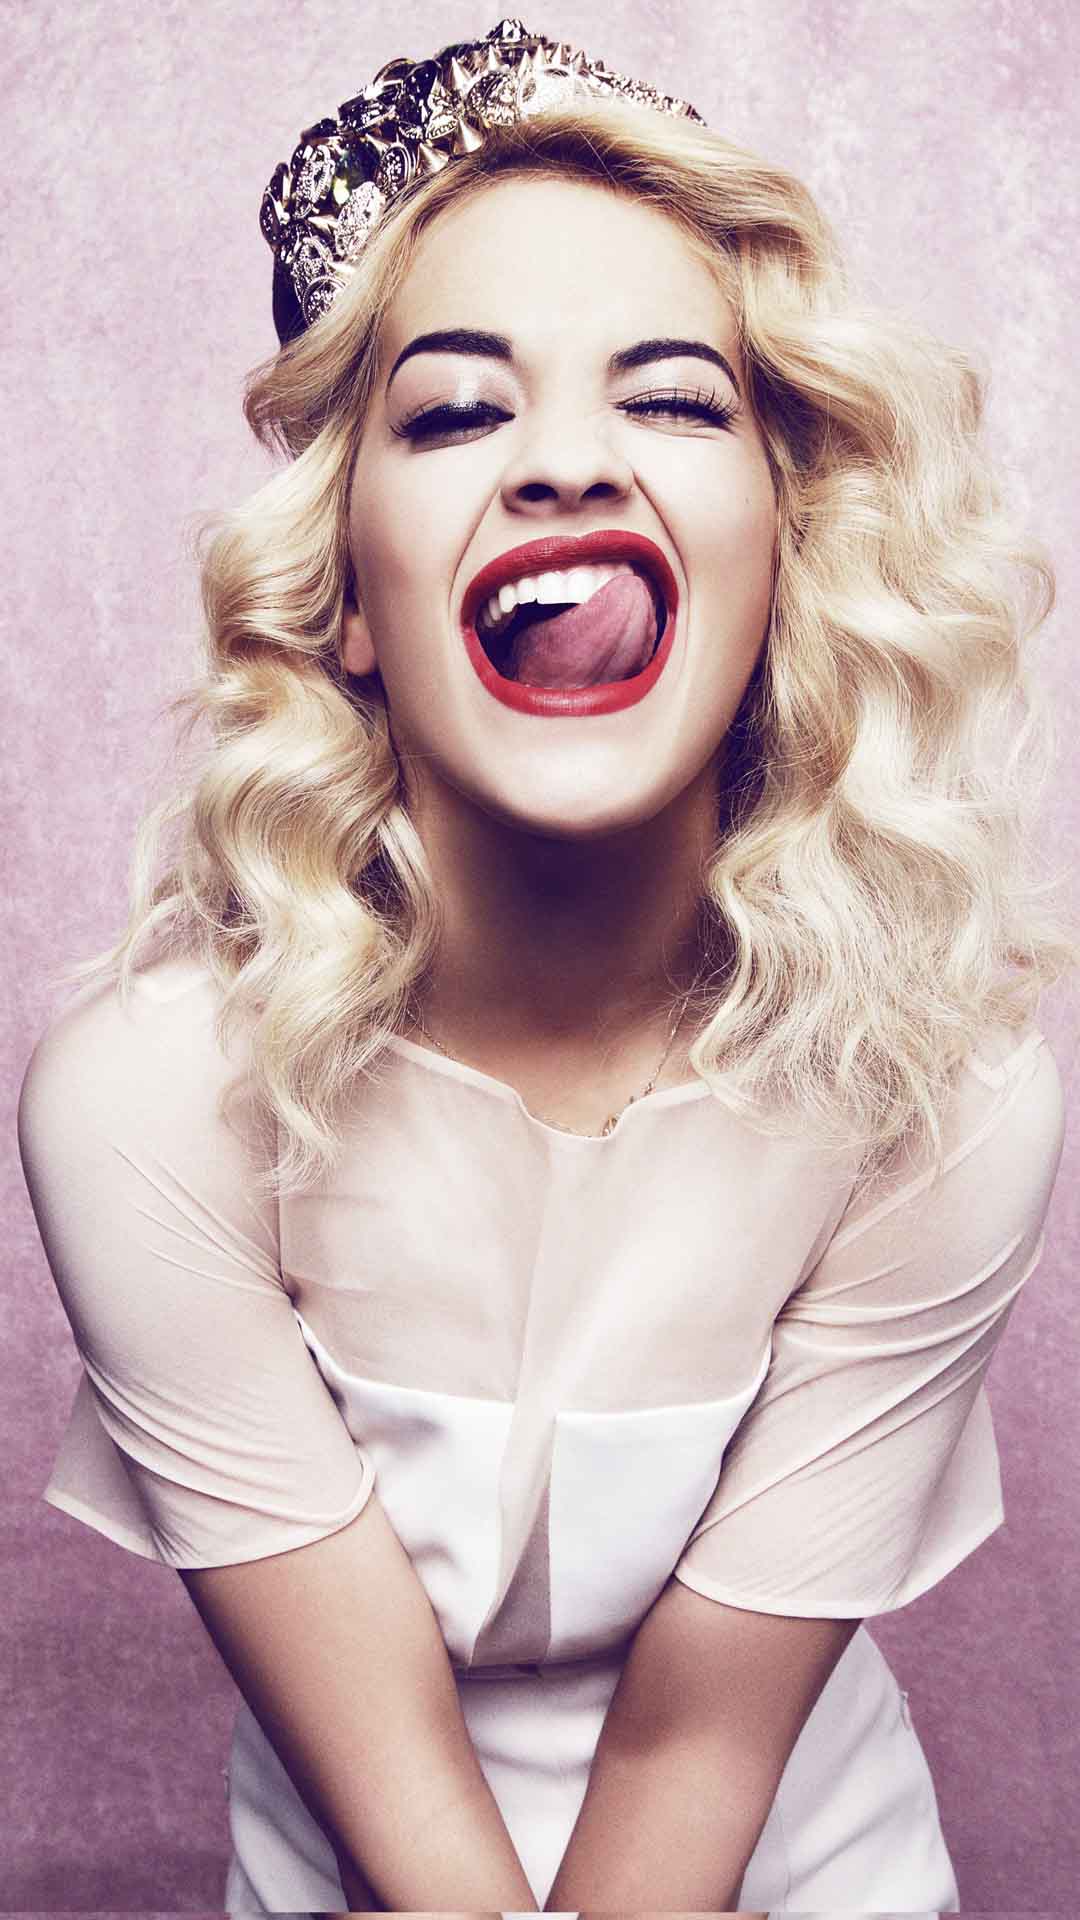 Rita Ora Cute 2020 Wallpapers